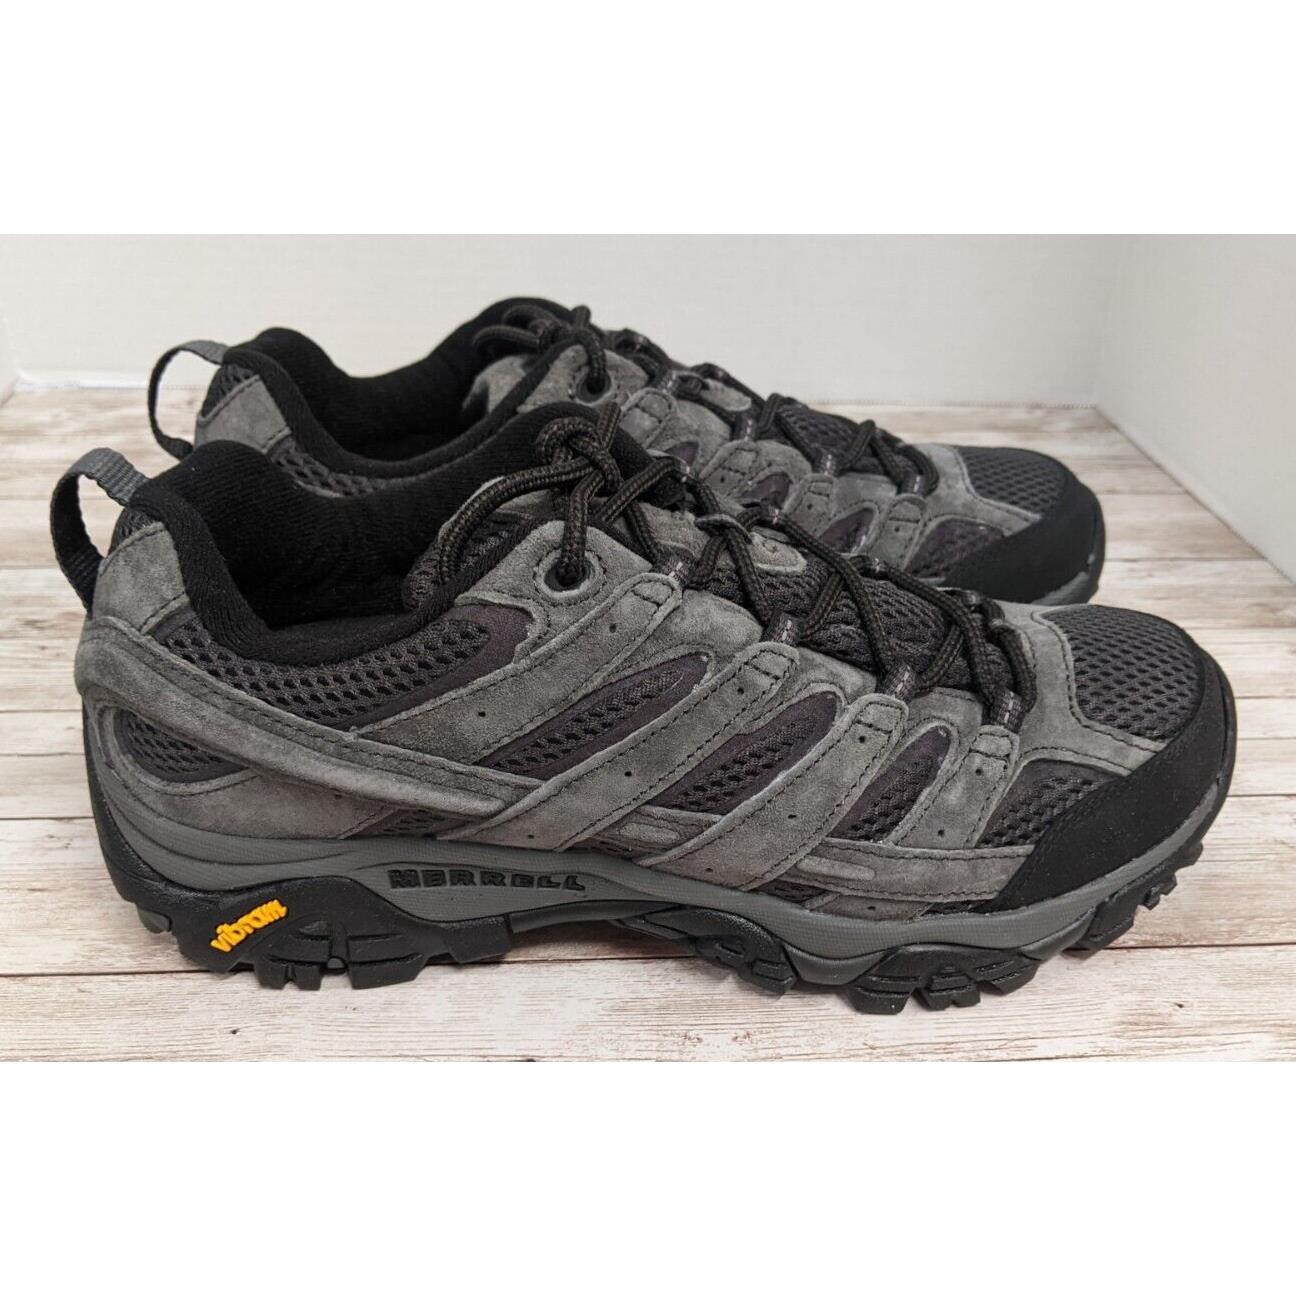 Merrell Mens Size 8 Moab 2 Ventilator J034207 Black Gray Hiking Sneaker Shoes